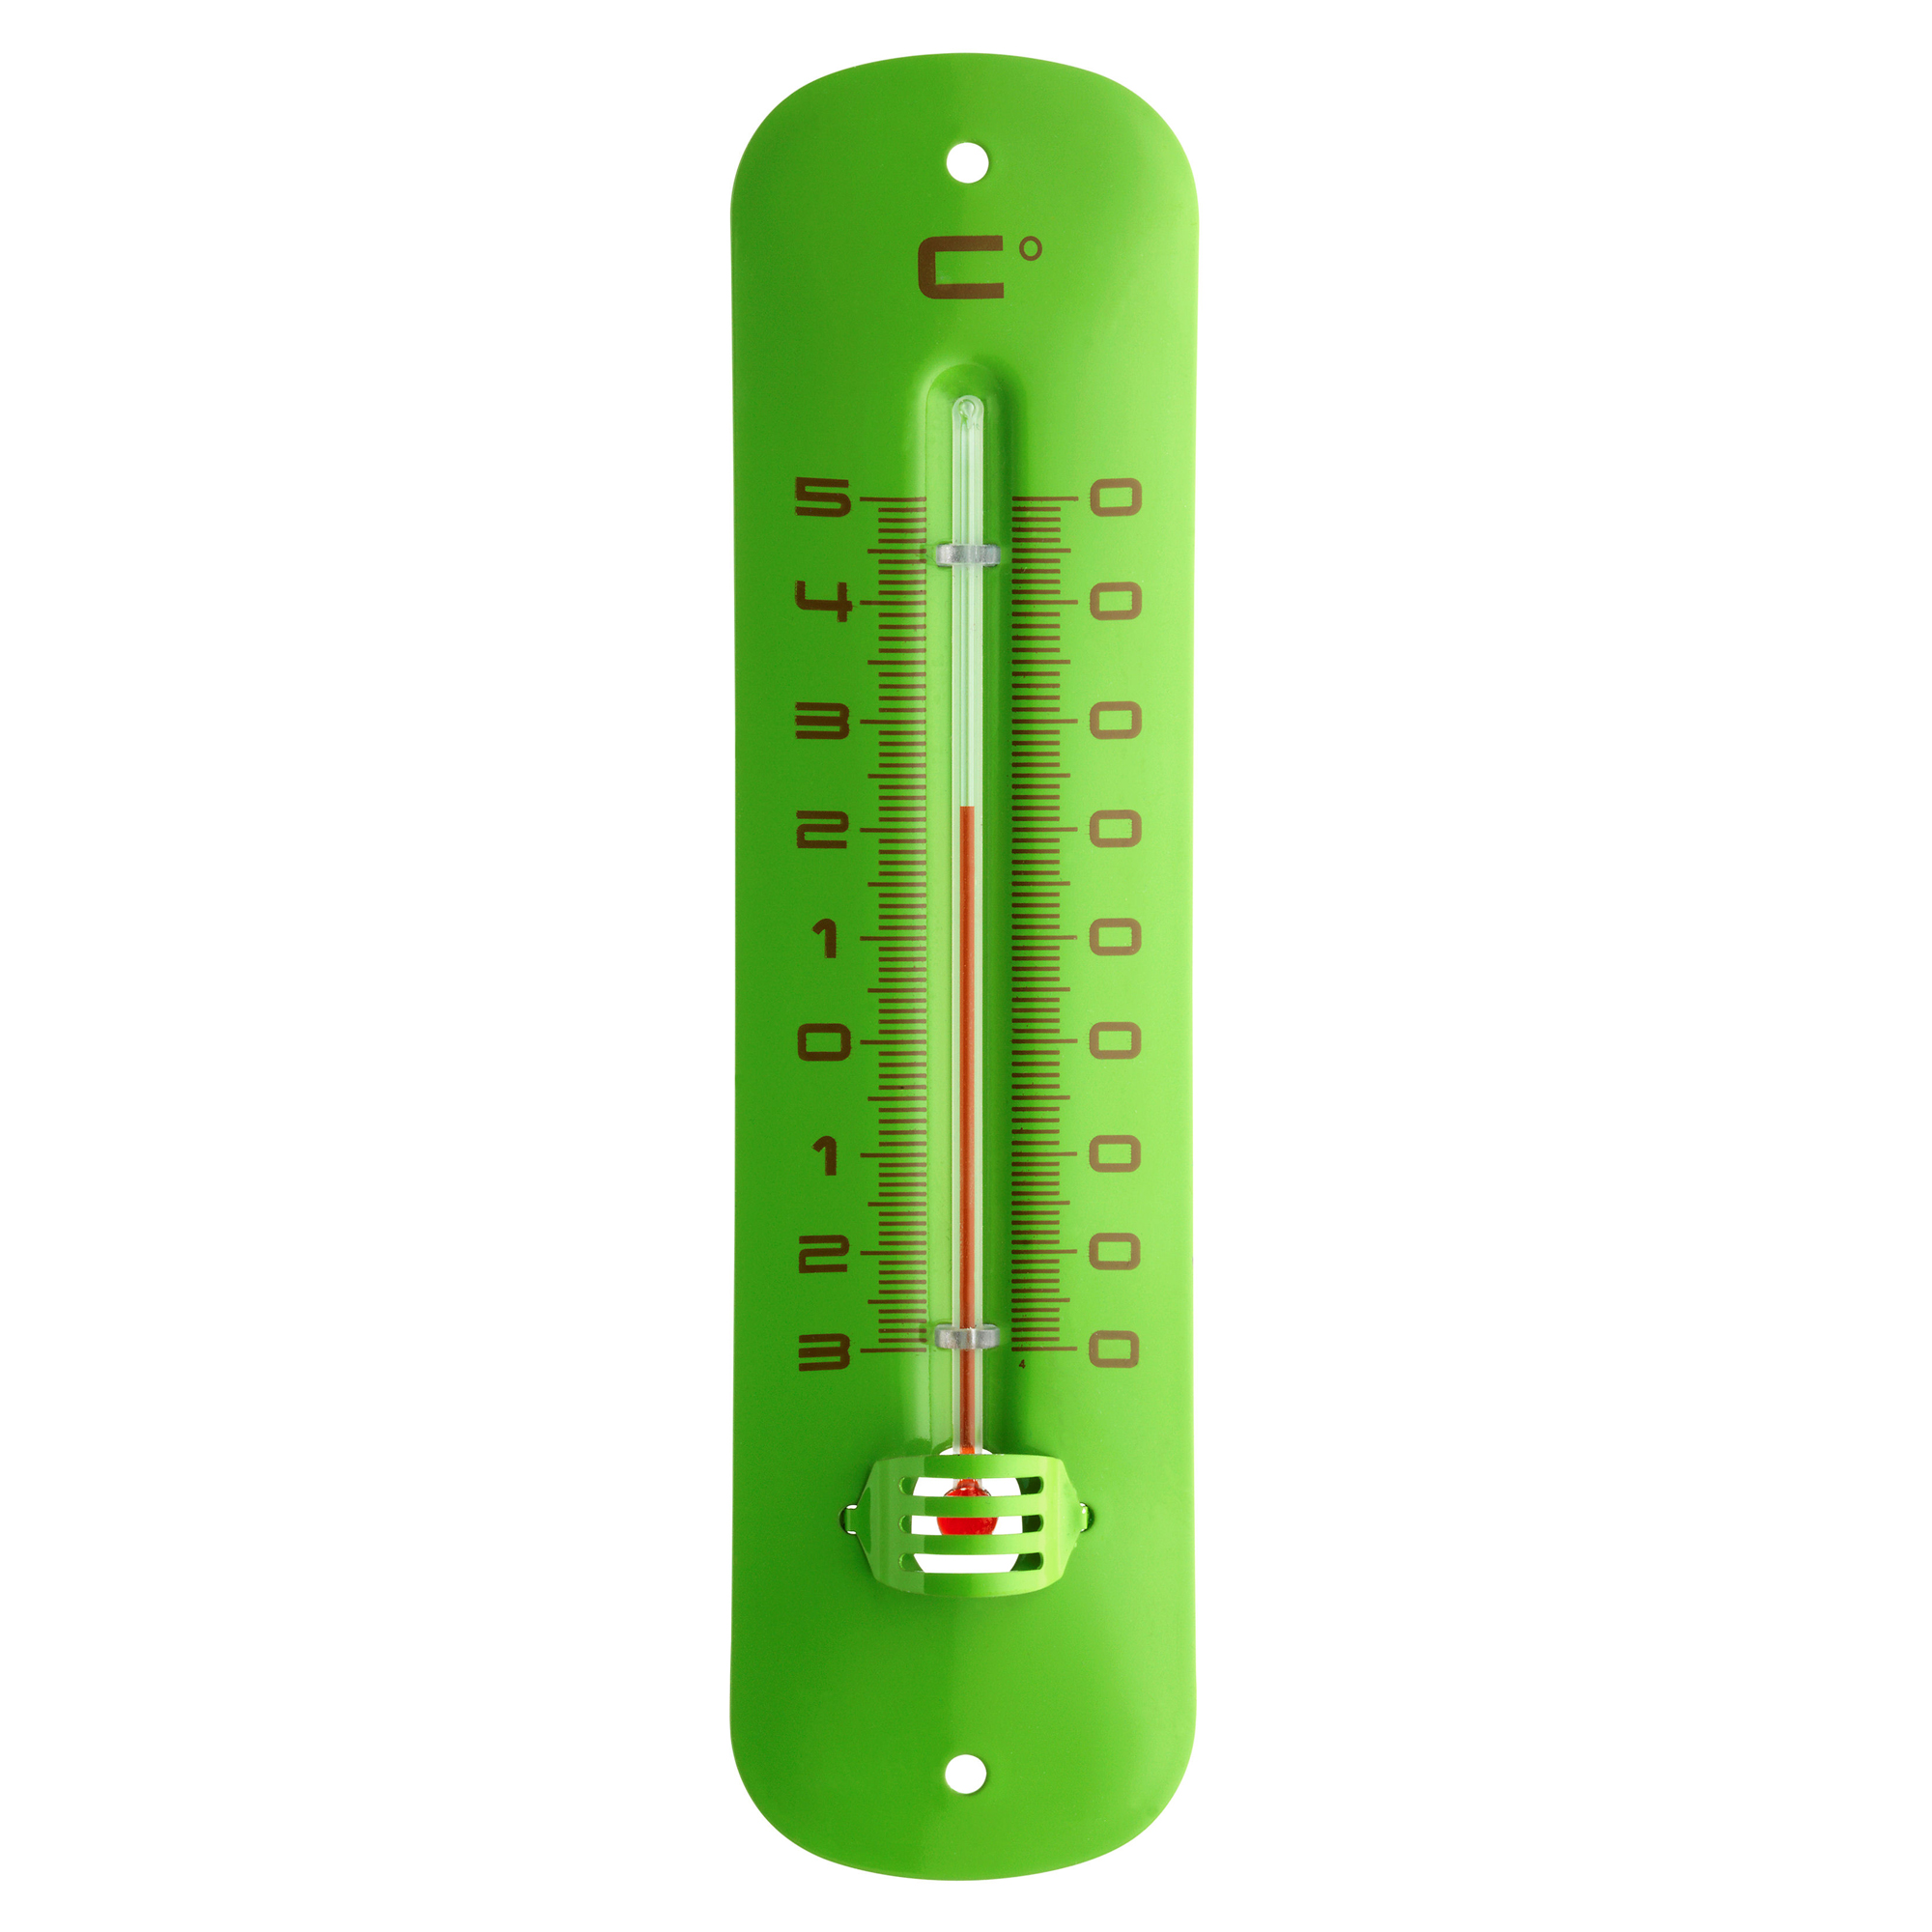 Innen- oder Außenthermometer Metall grün 5 x 1,3 x 19,2 cm + product picture